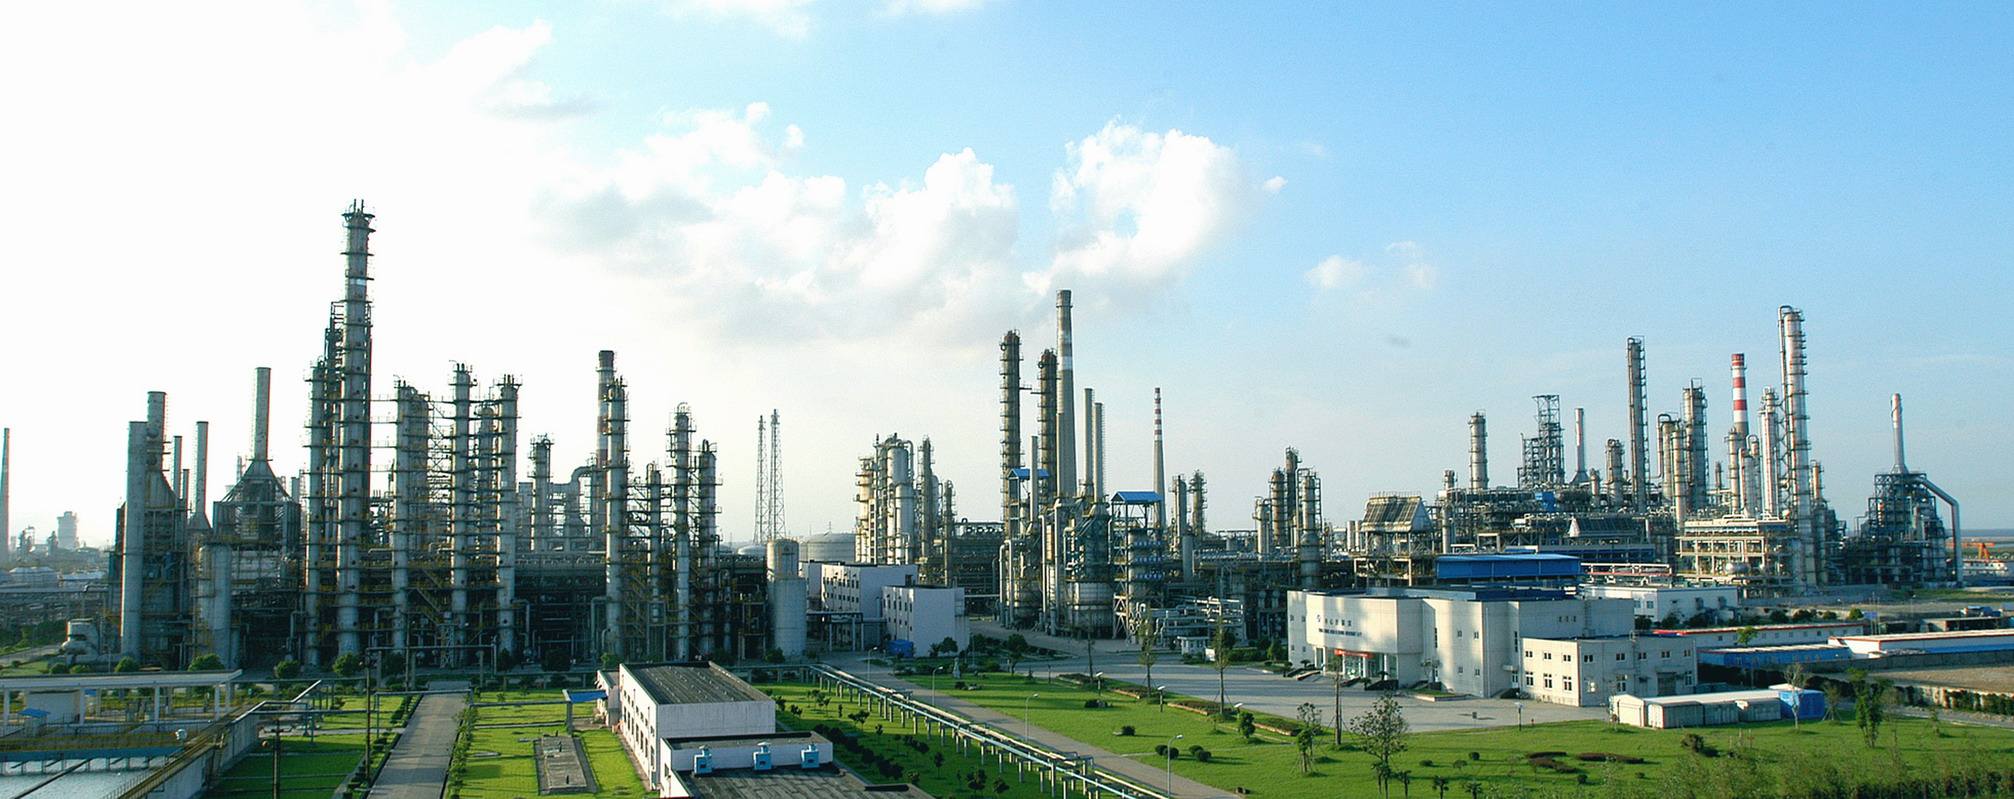 中石化青岛炼油厂